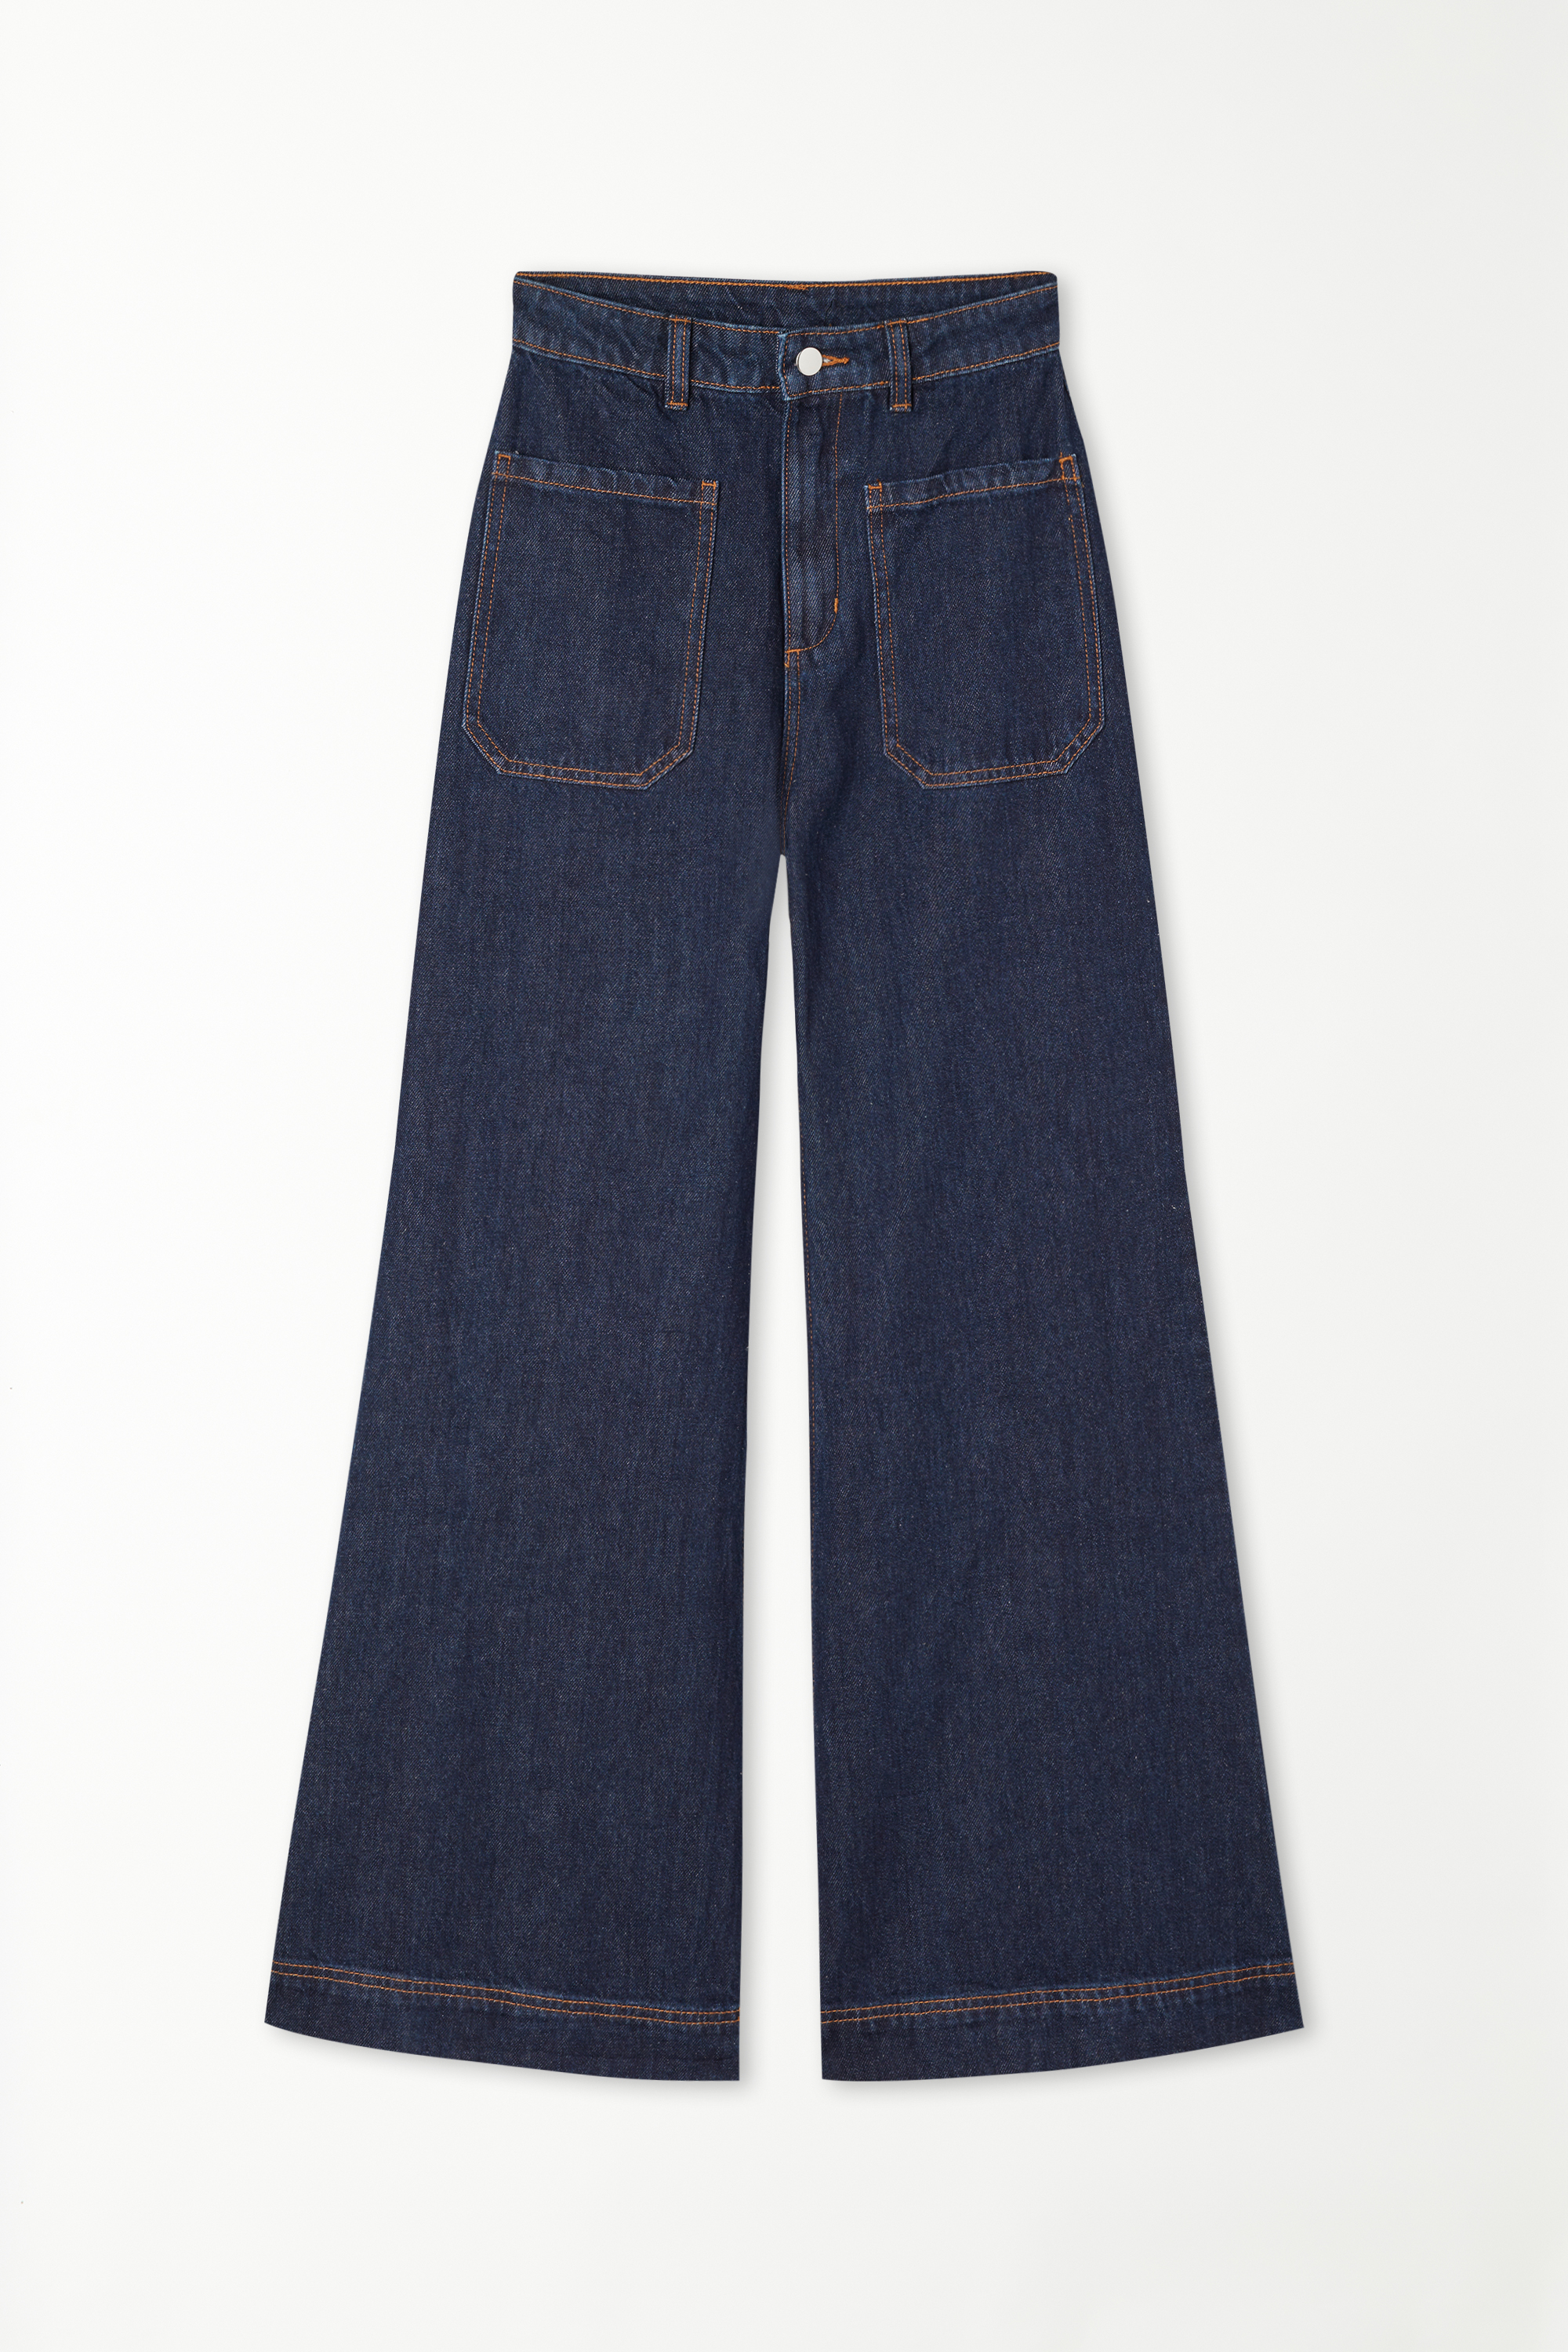 Full Length Straight Cut High-Waist Délavé Denim Jeans